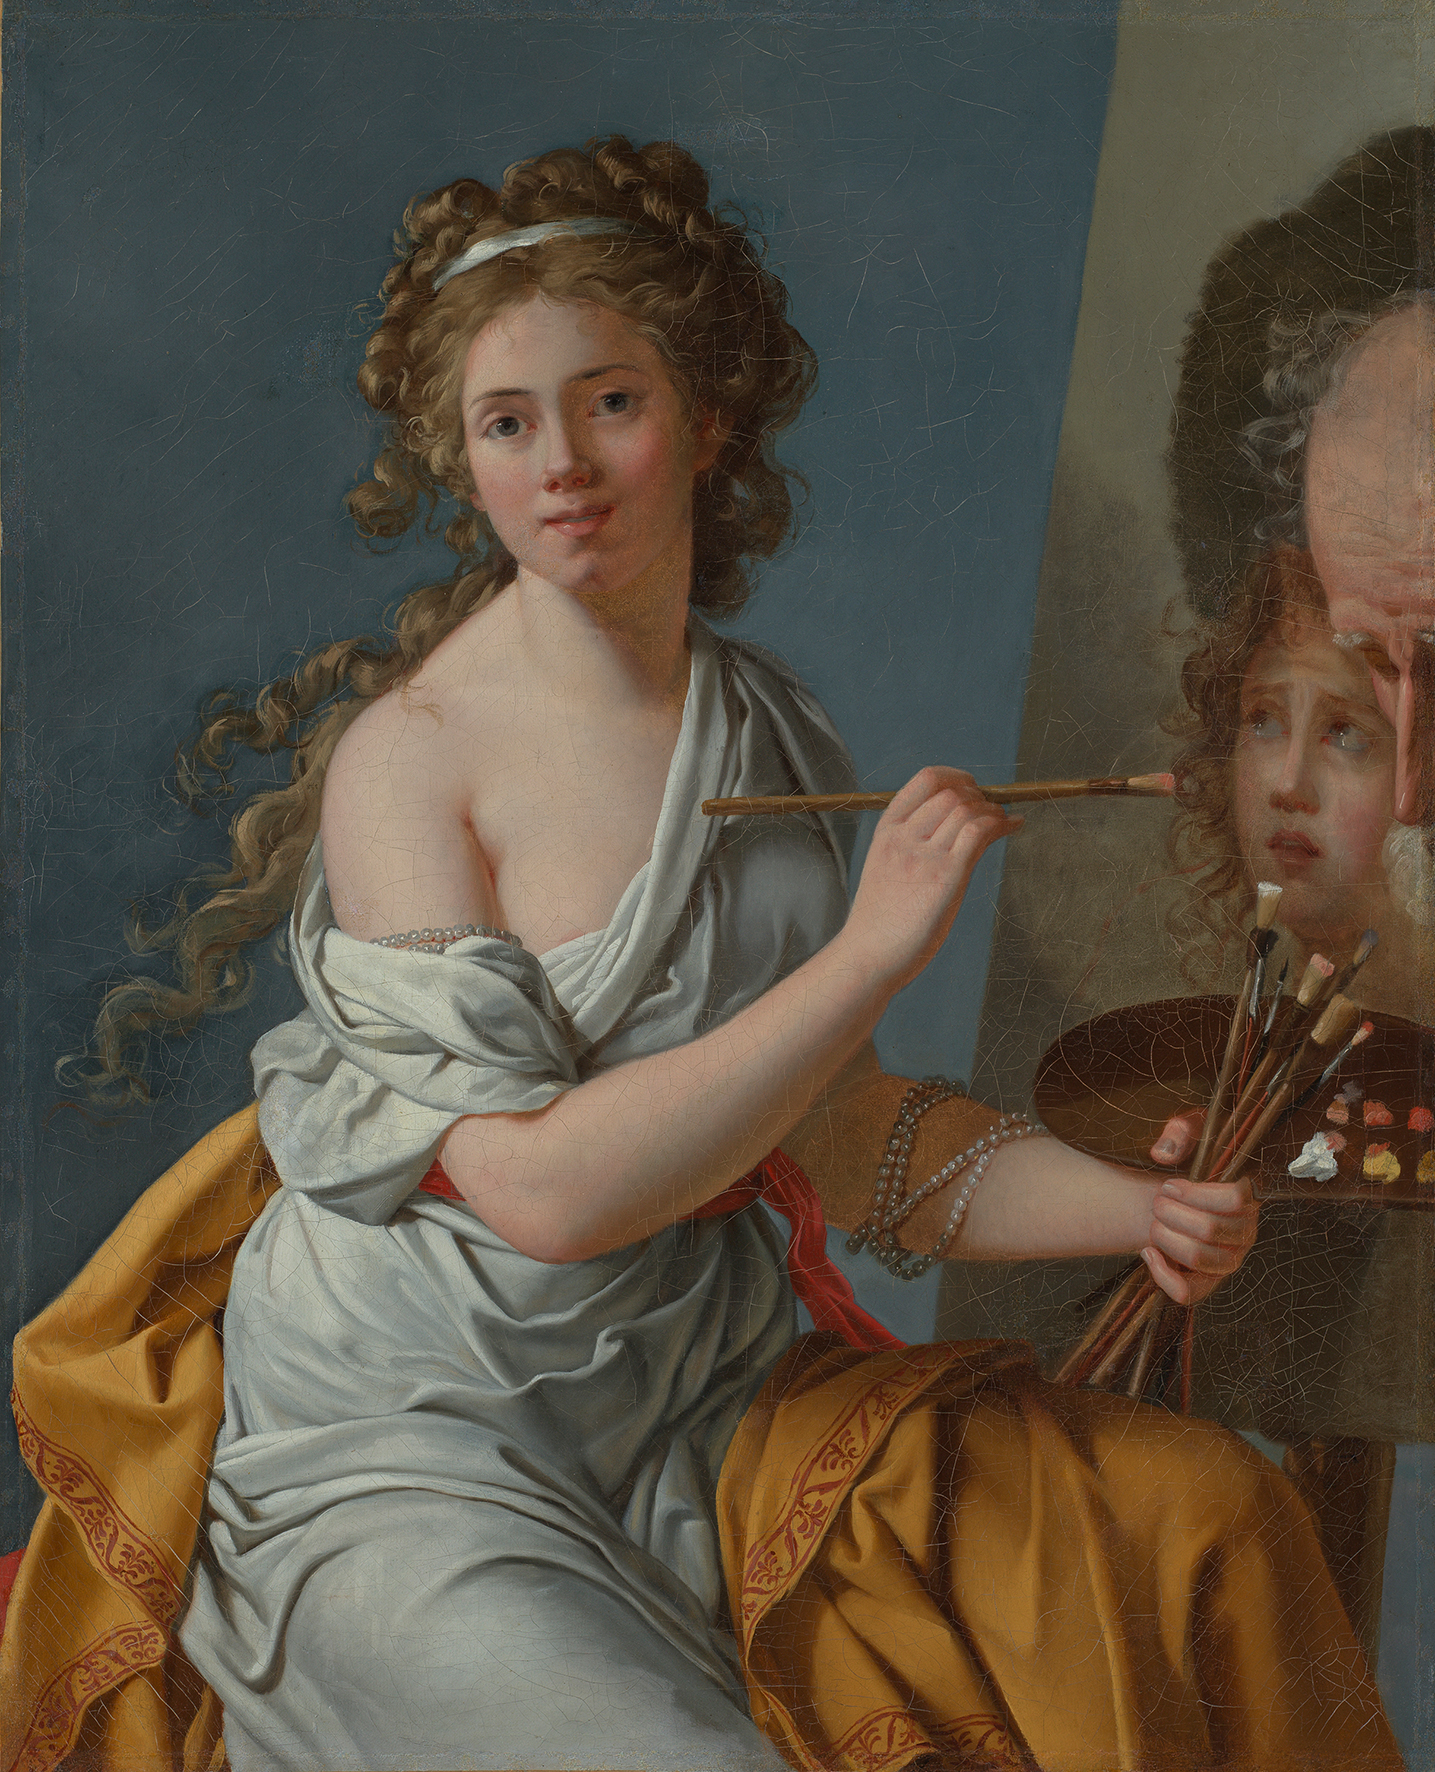 Gemälde auf dem eine idealisiert dargestellte Frau die Betrachter*innen anblickt, während sie auf einer Leinwand ein Porträt anfertigt.